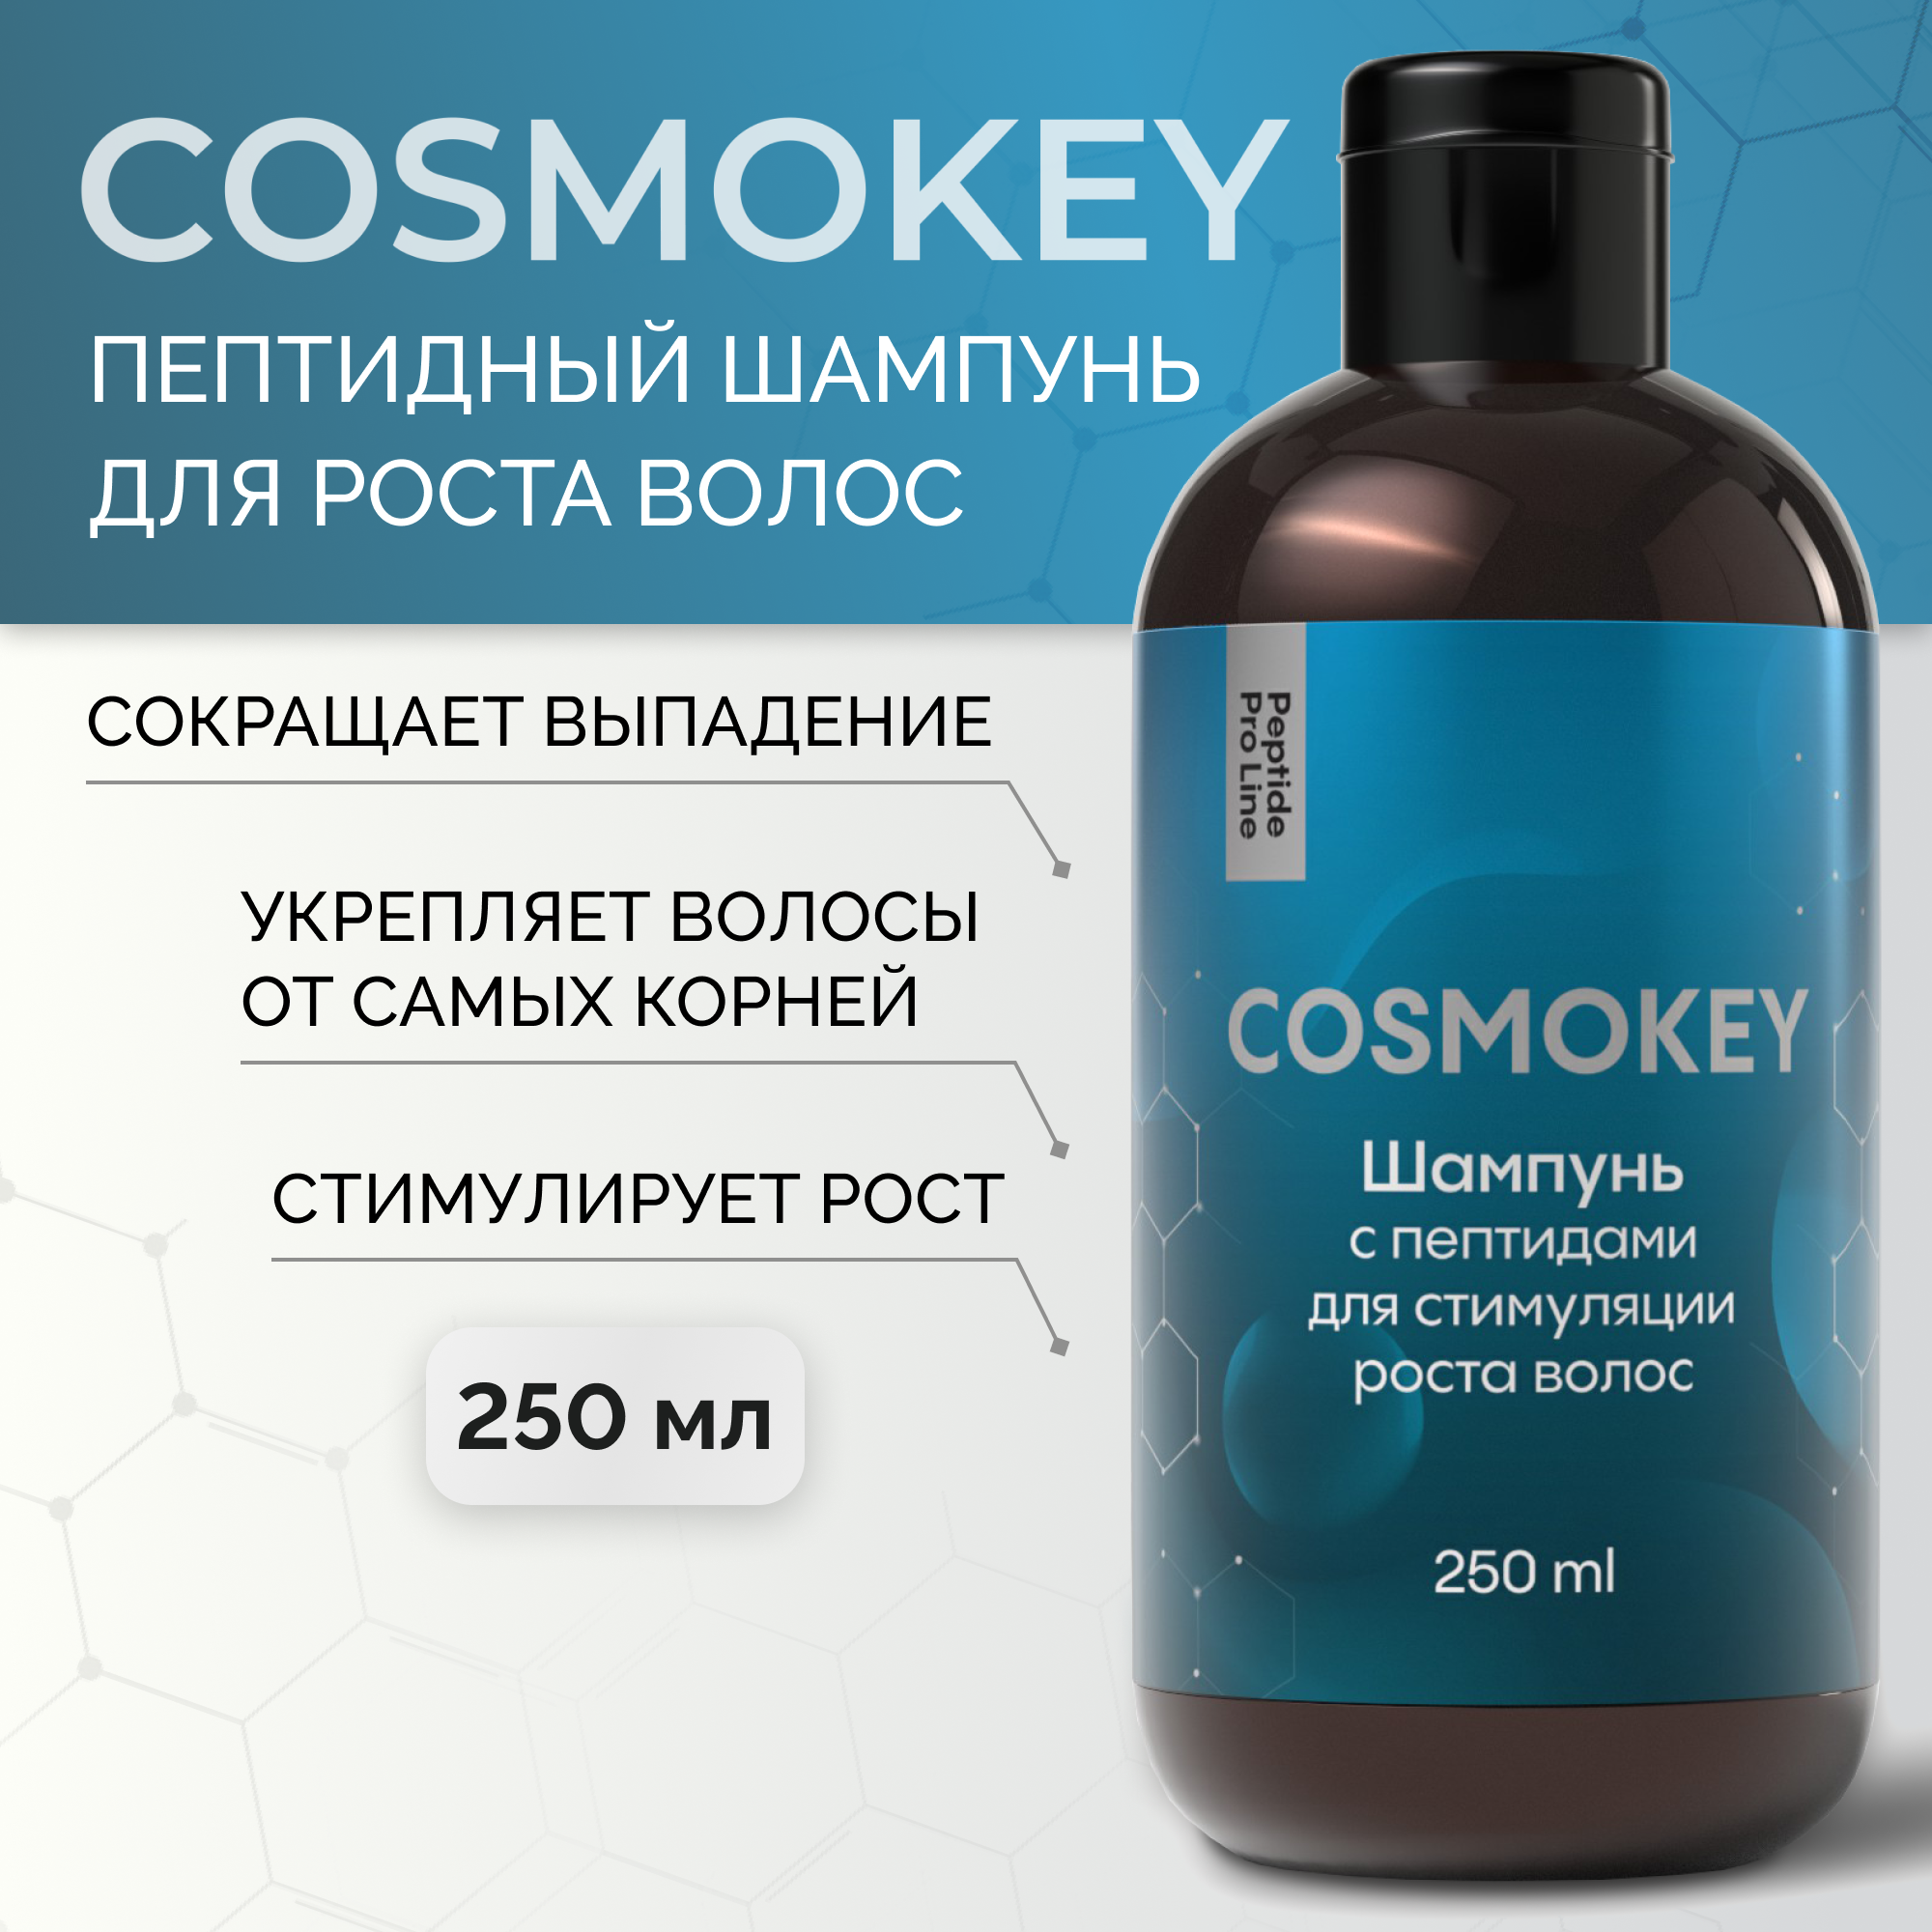 Шампунь Cosmokey Космокей с пептидами для стимуляции роста волос 250 мл